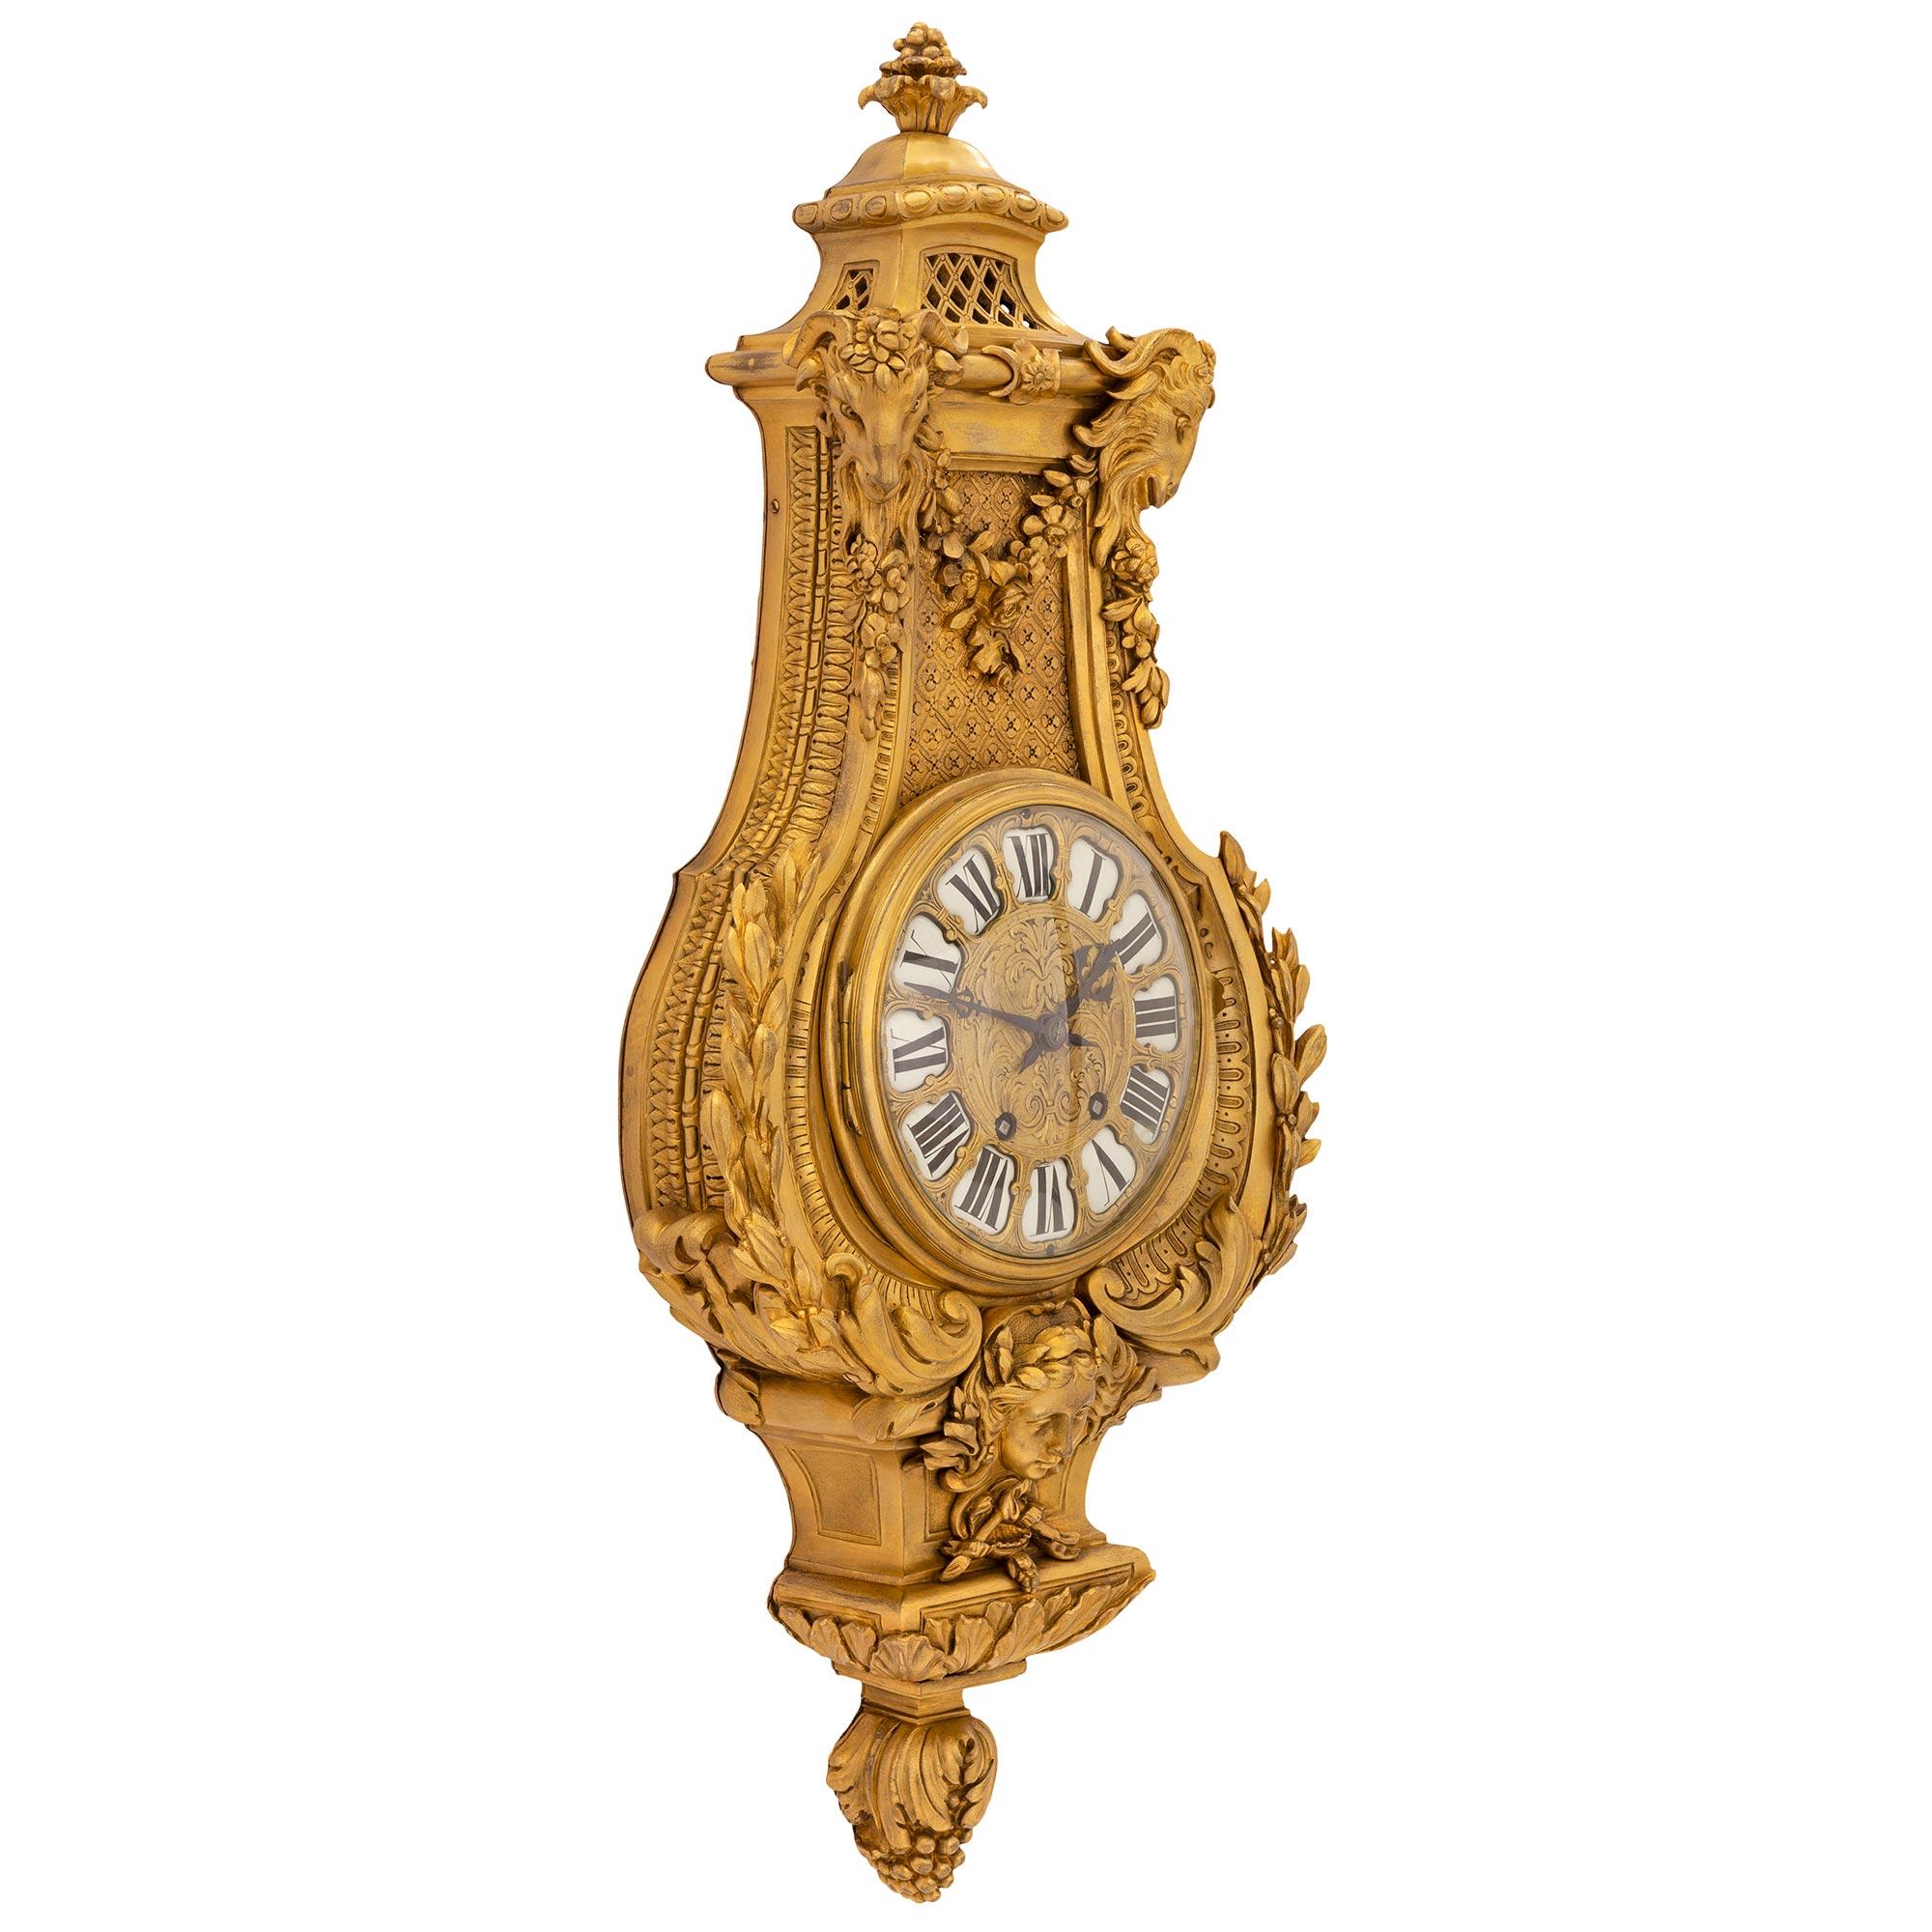 Eine außergewöhnliche und sehr hohe Qualität Französisch Mitte des 19. Jahrhunderts Louis XVI st. Ormolu Kartell Uhr, von Etienne Maxant. Die imposante Wanduhr wird von einem atemberaubenden, reich ziselierten, beerenbesetzten Blattknauf unter einer